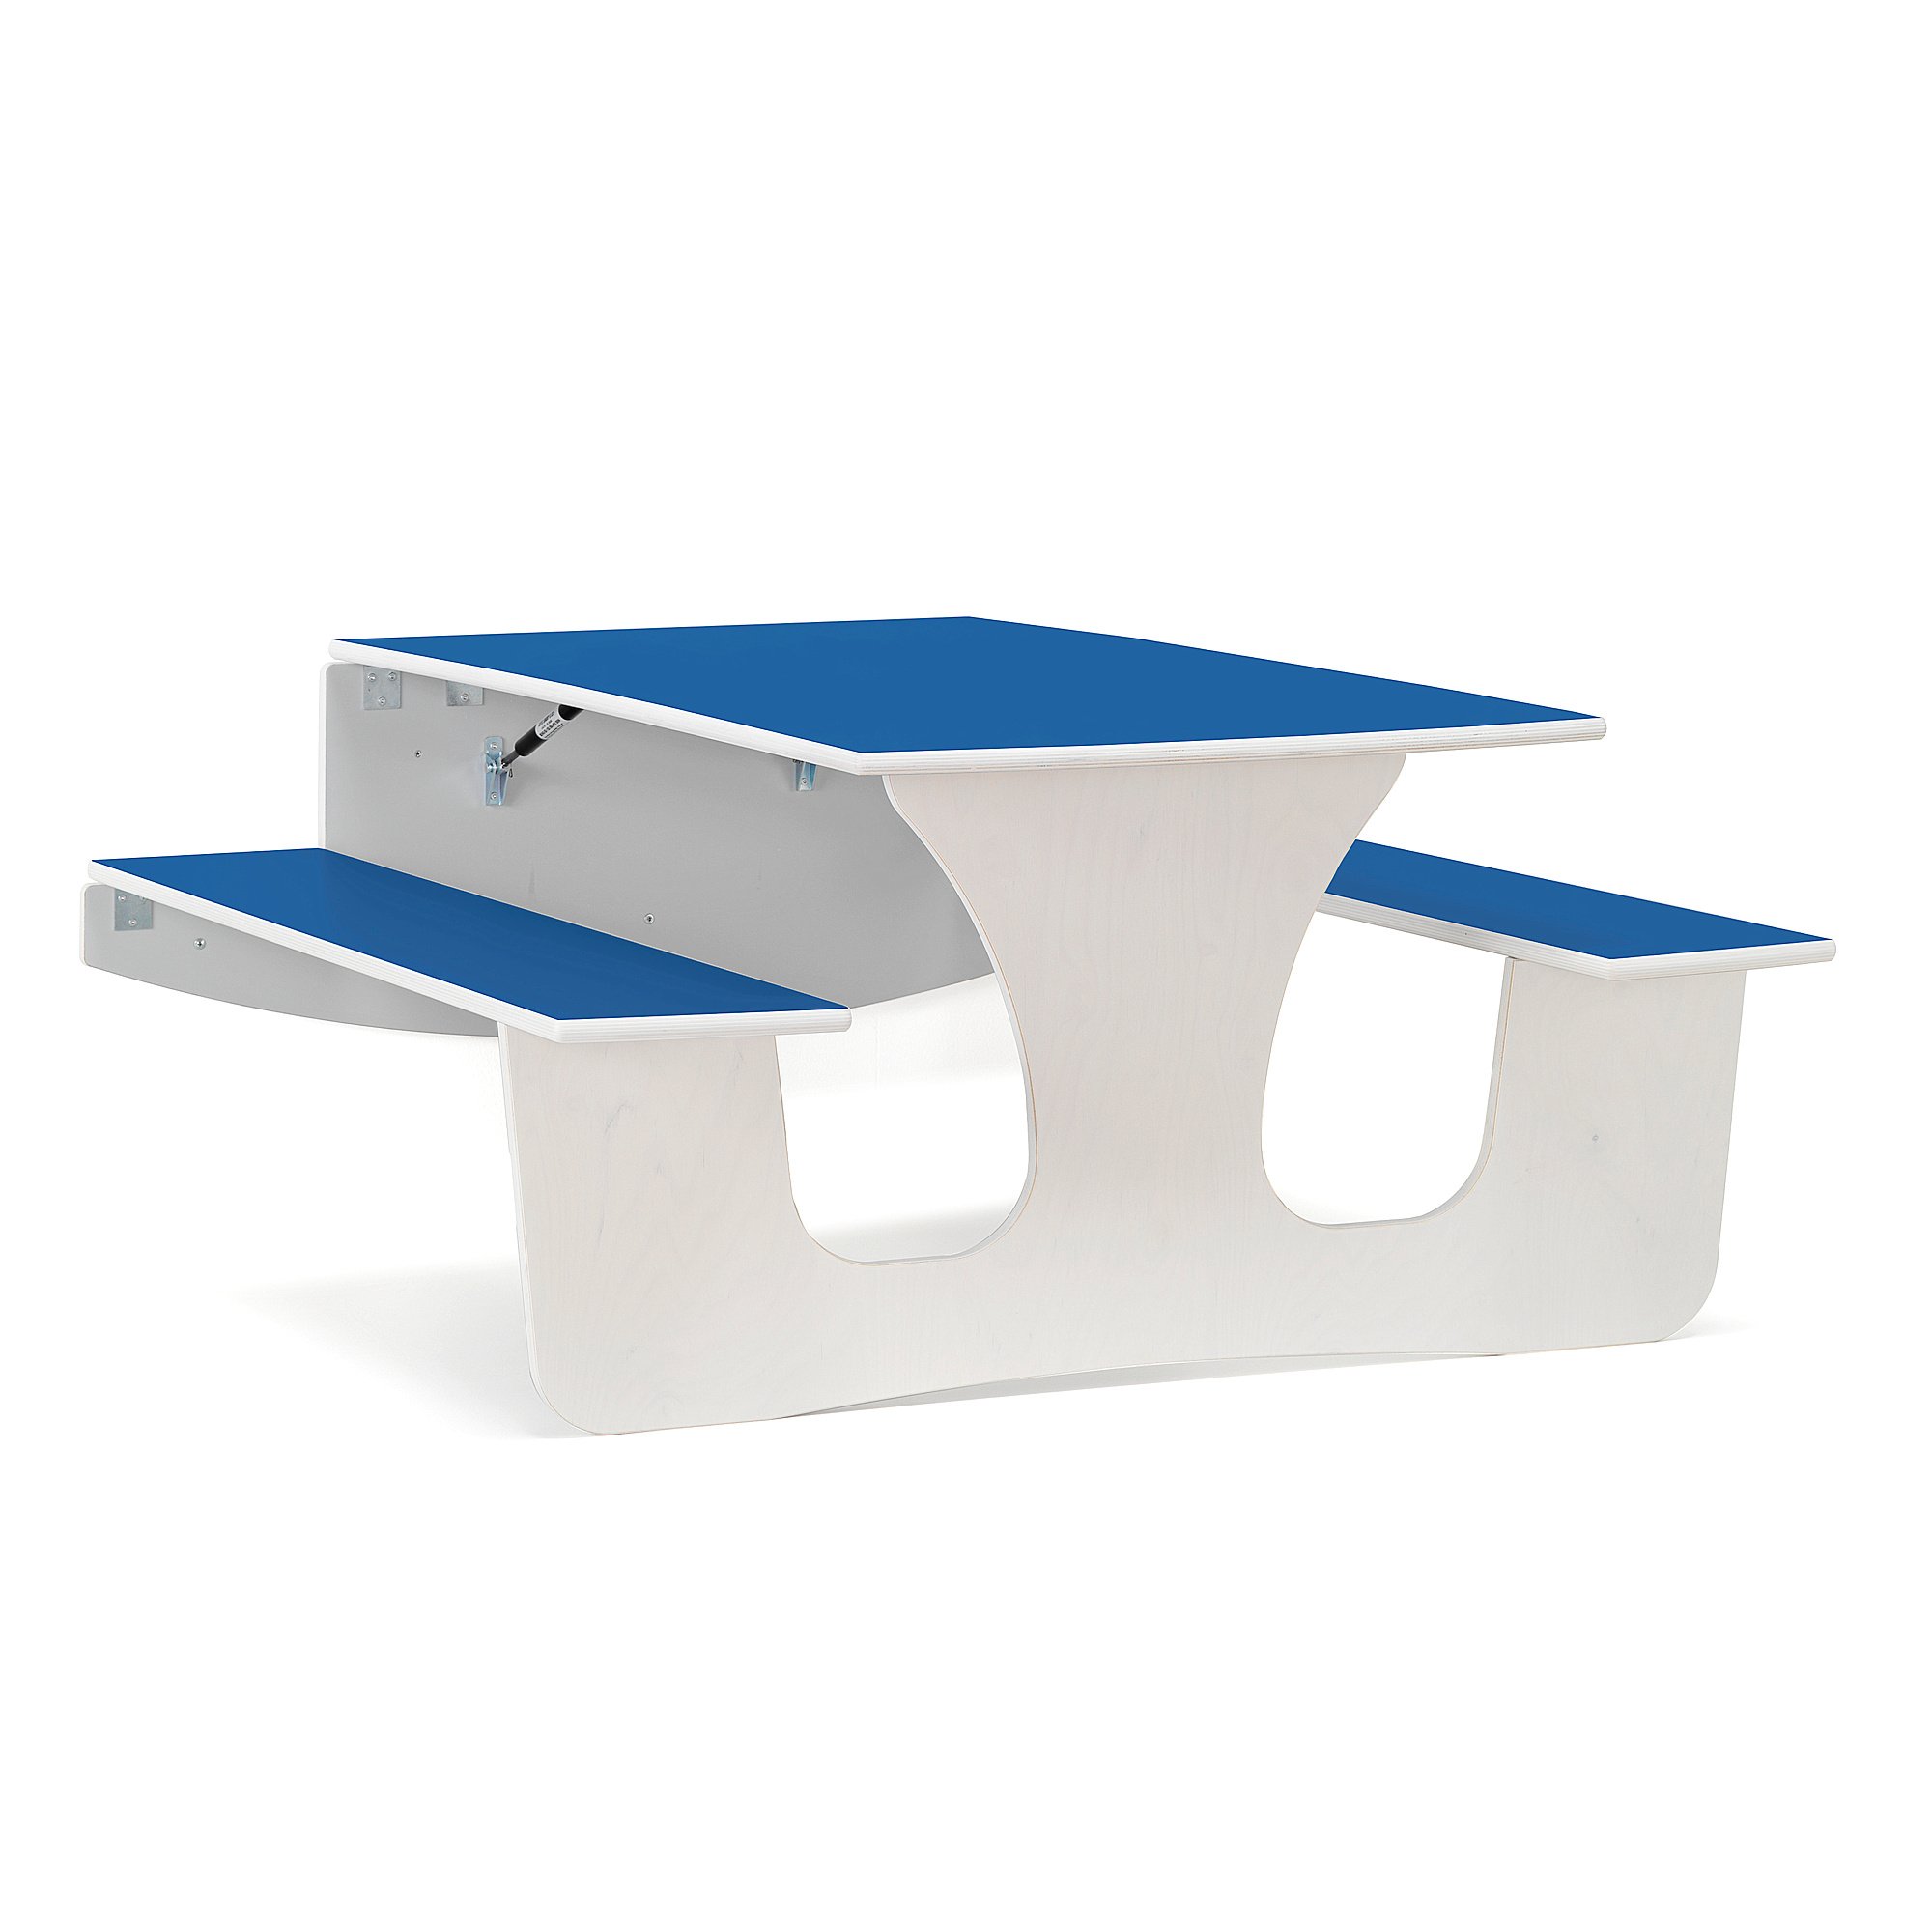 Nástěnný stůl LUCAS, 1200x1200x720 mm, bílá, modrá